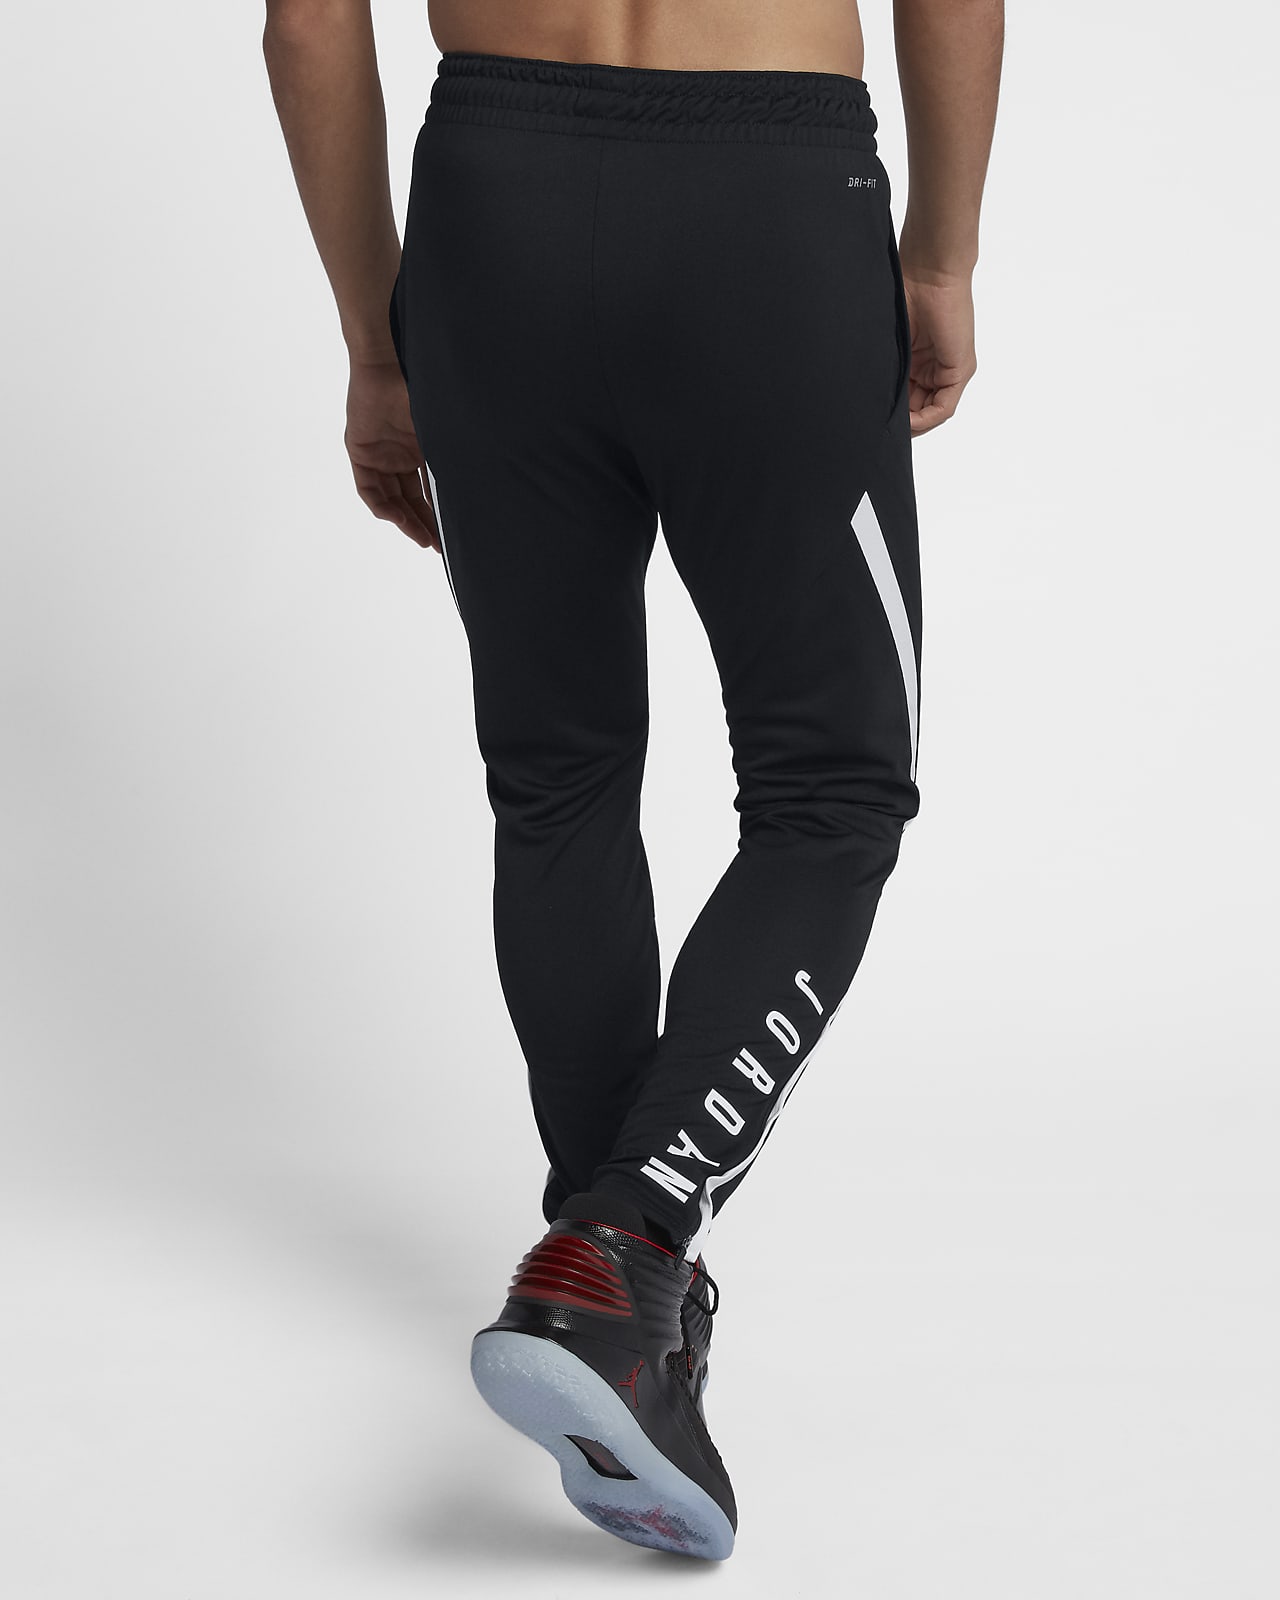 Pantalones para hombre Jordan 23 Alpha Dri-FIT. Nike.com